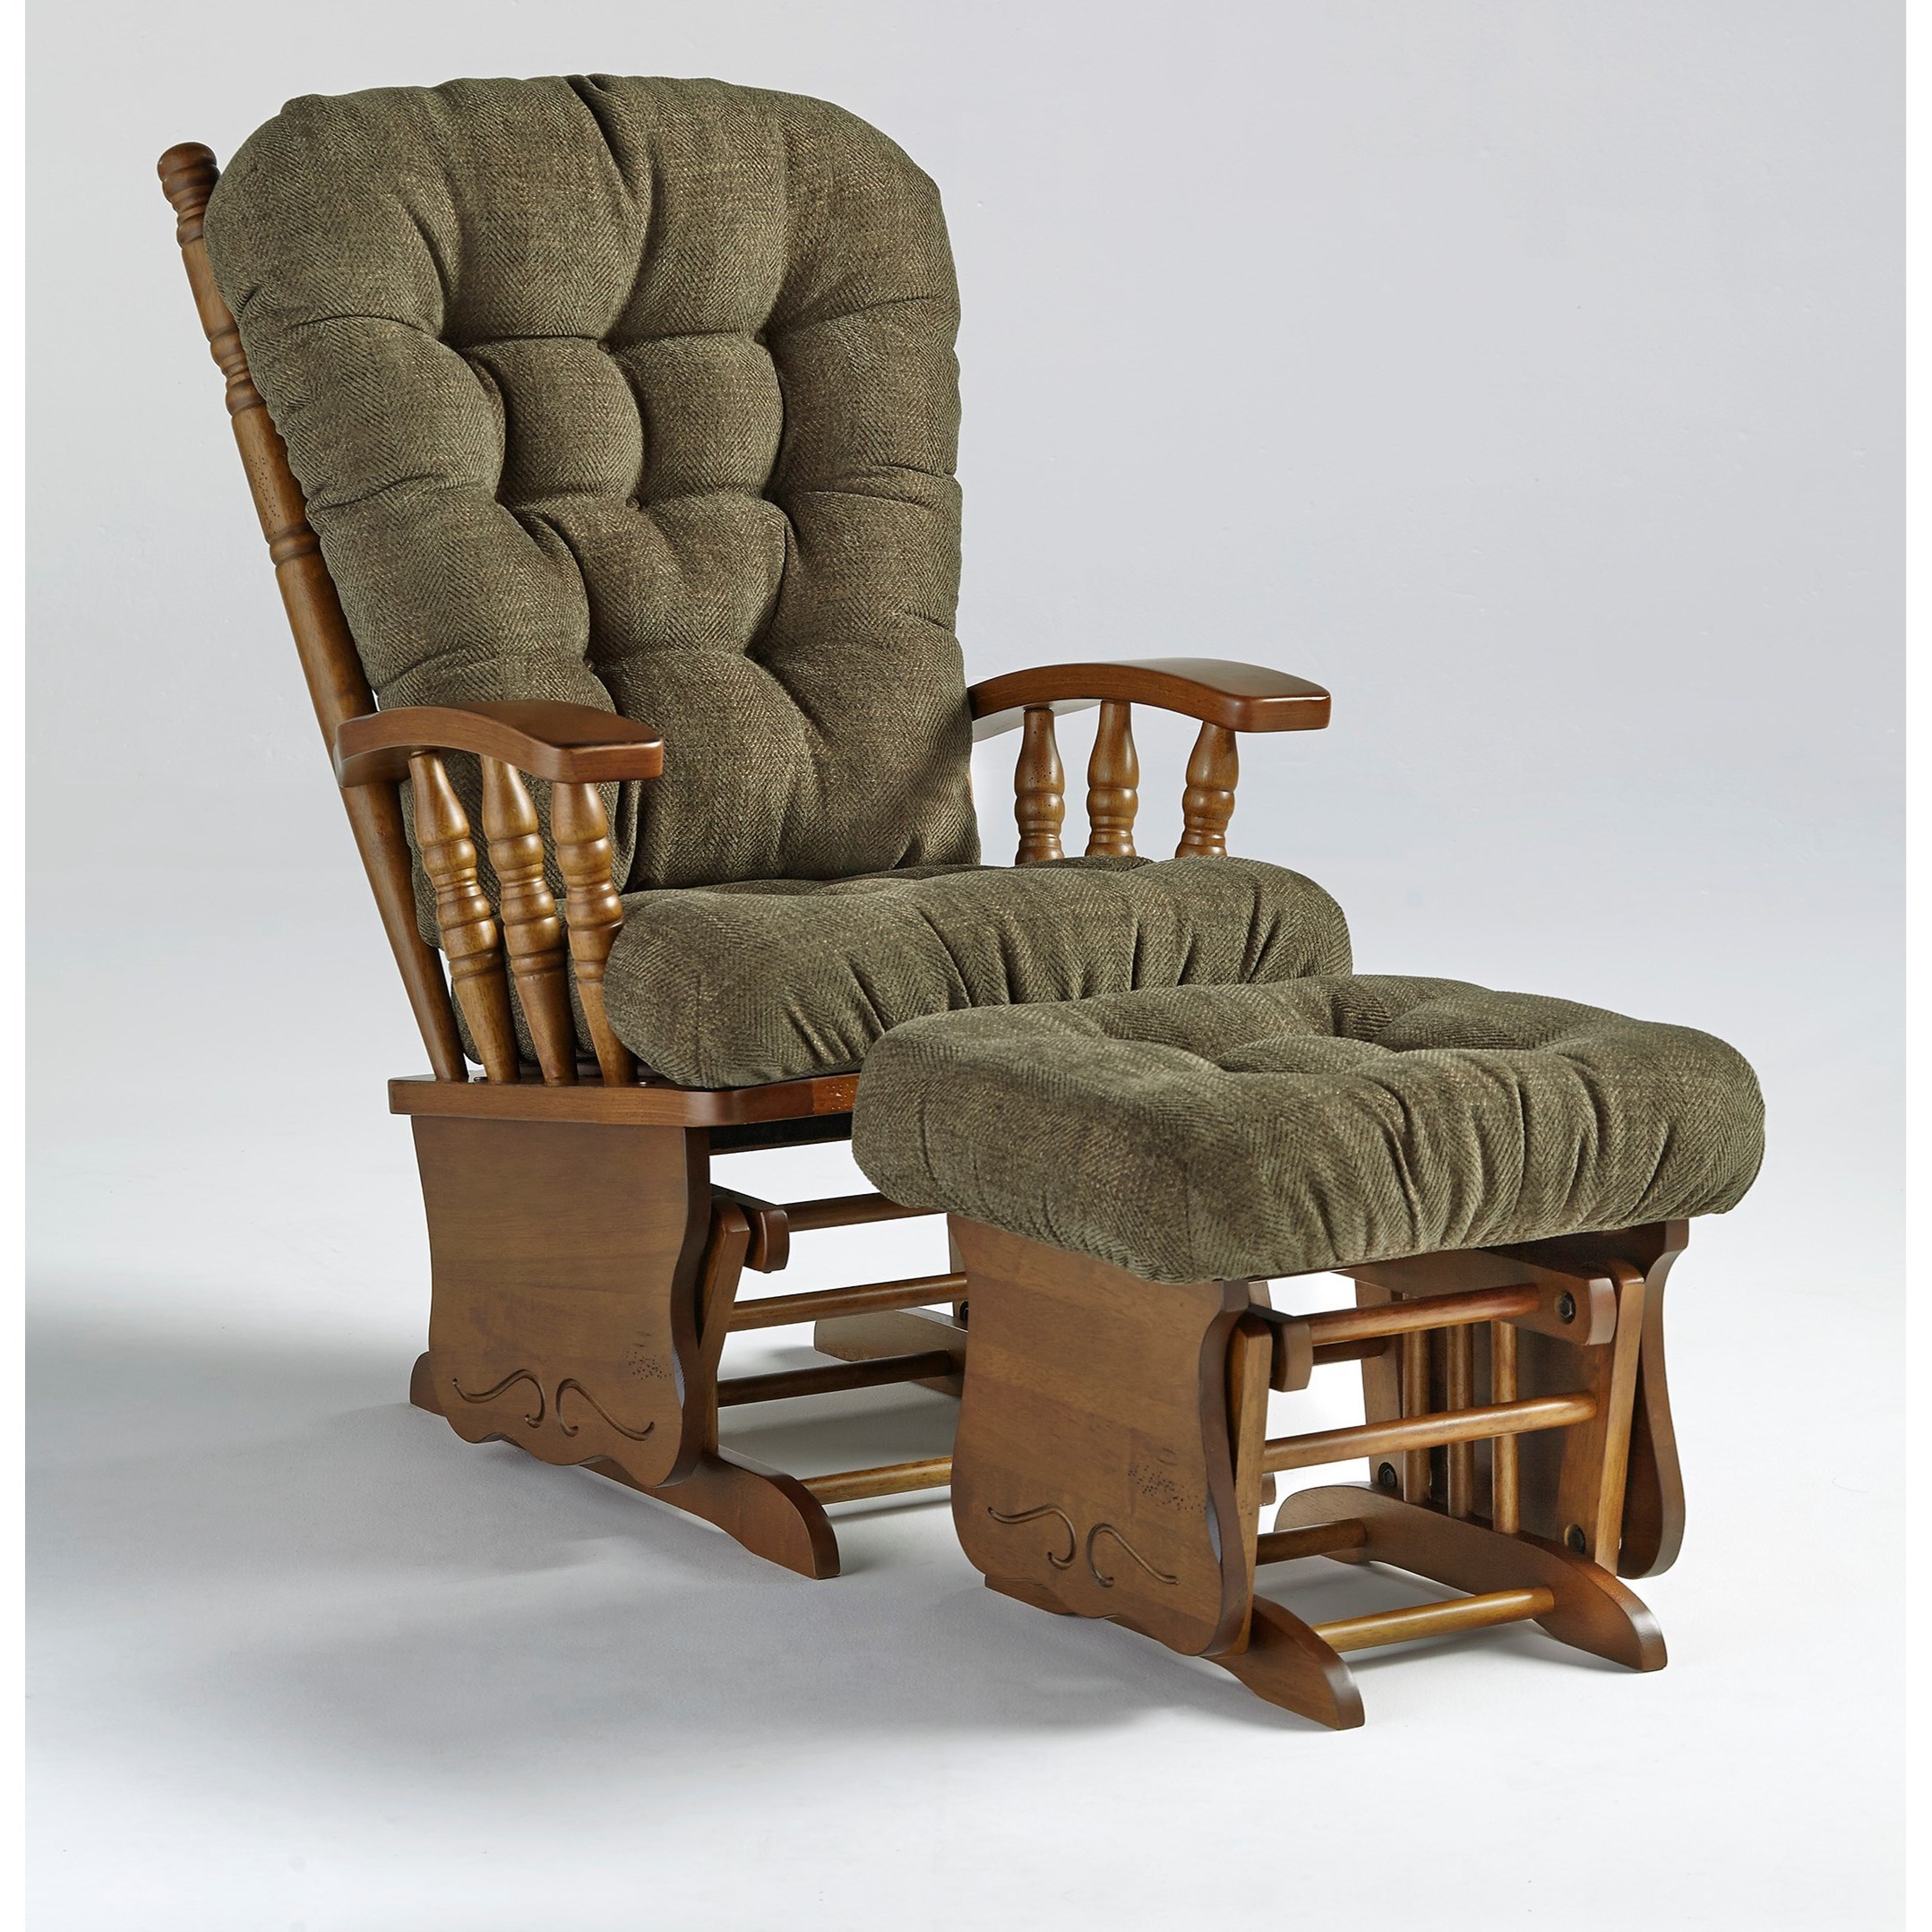 wooden rocker glider chair